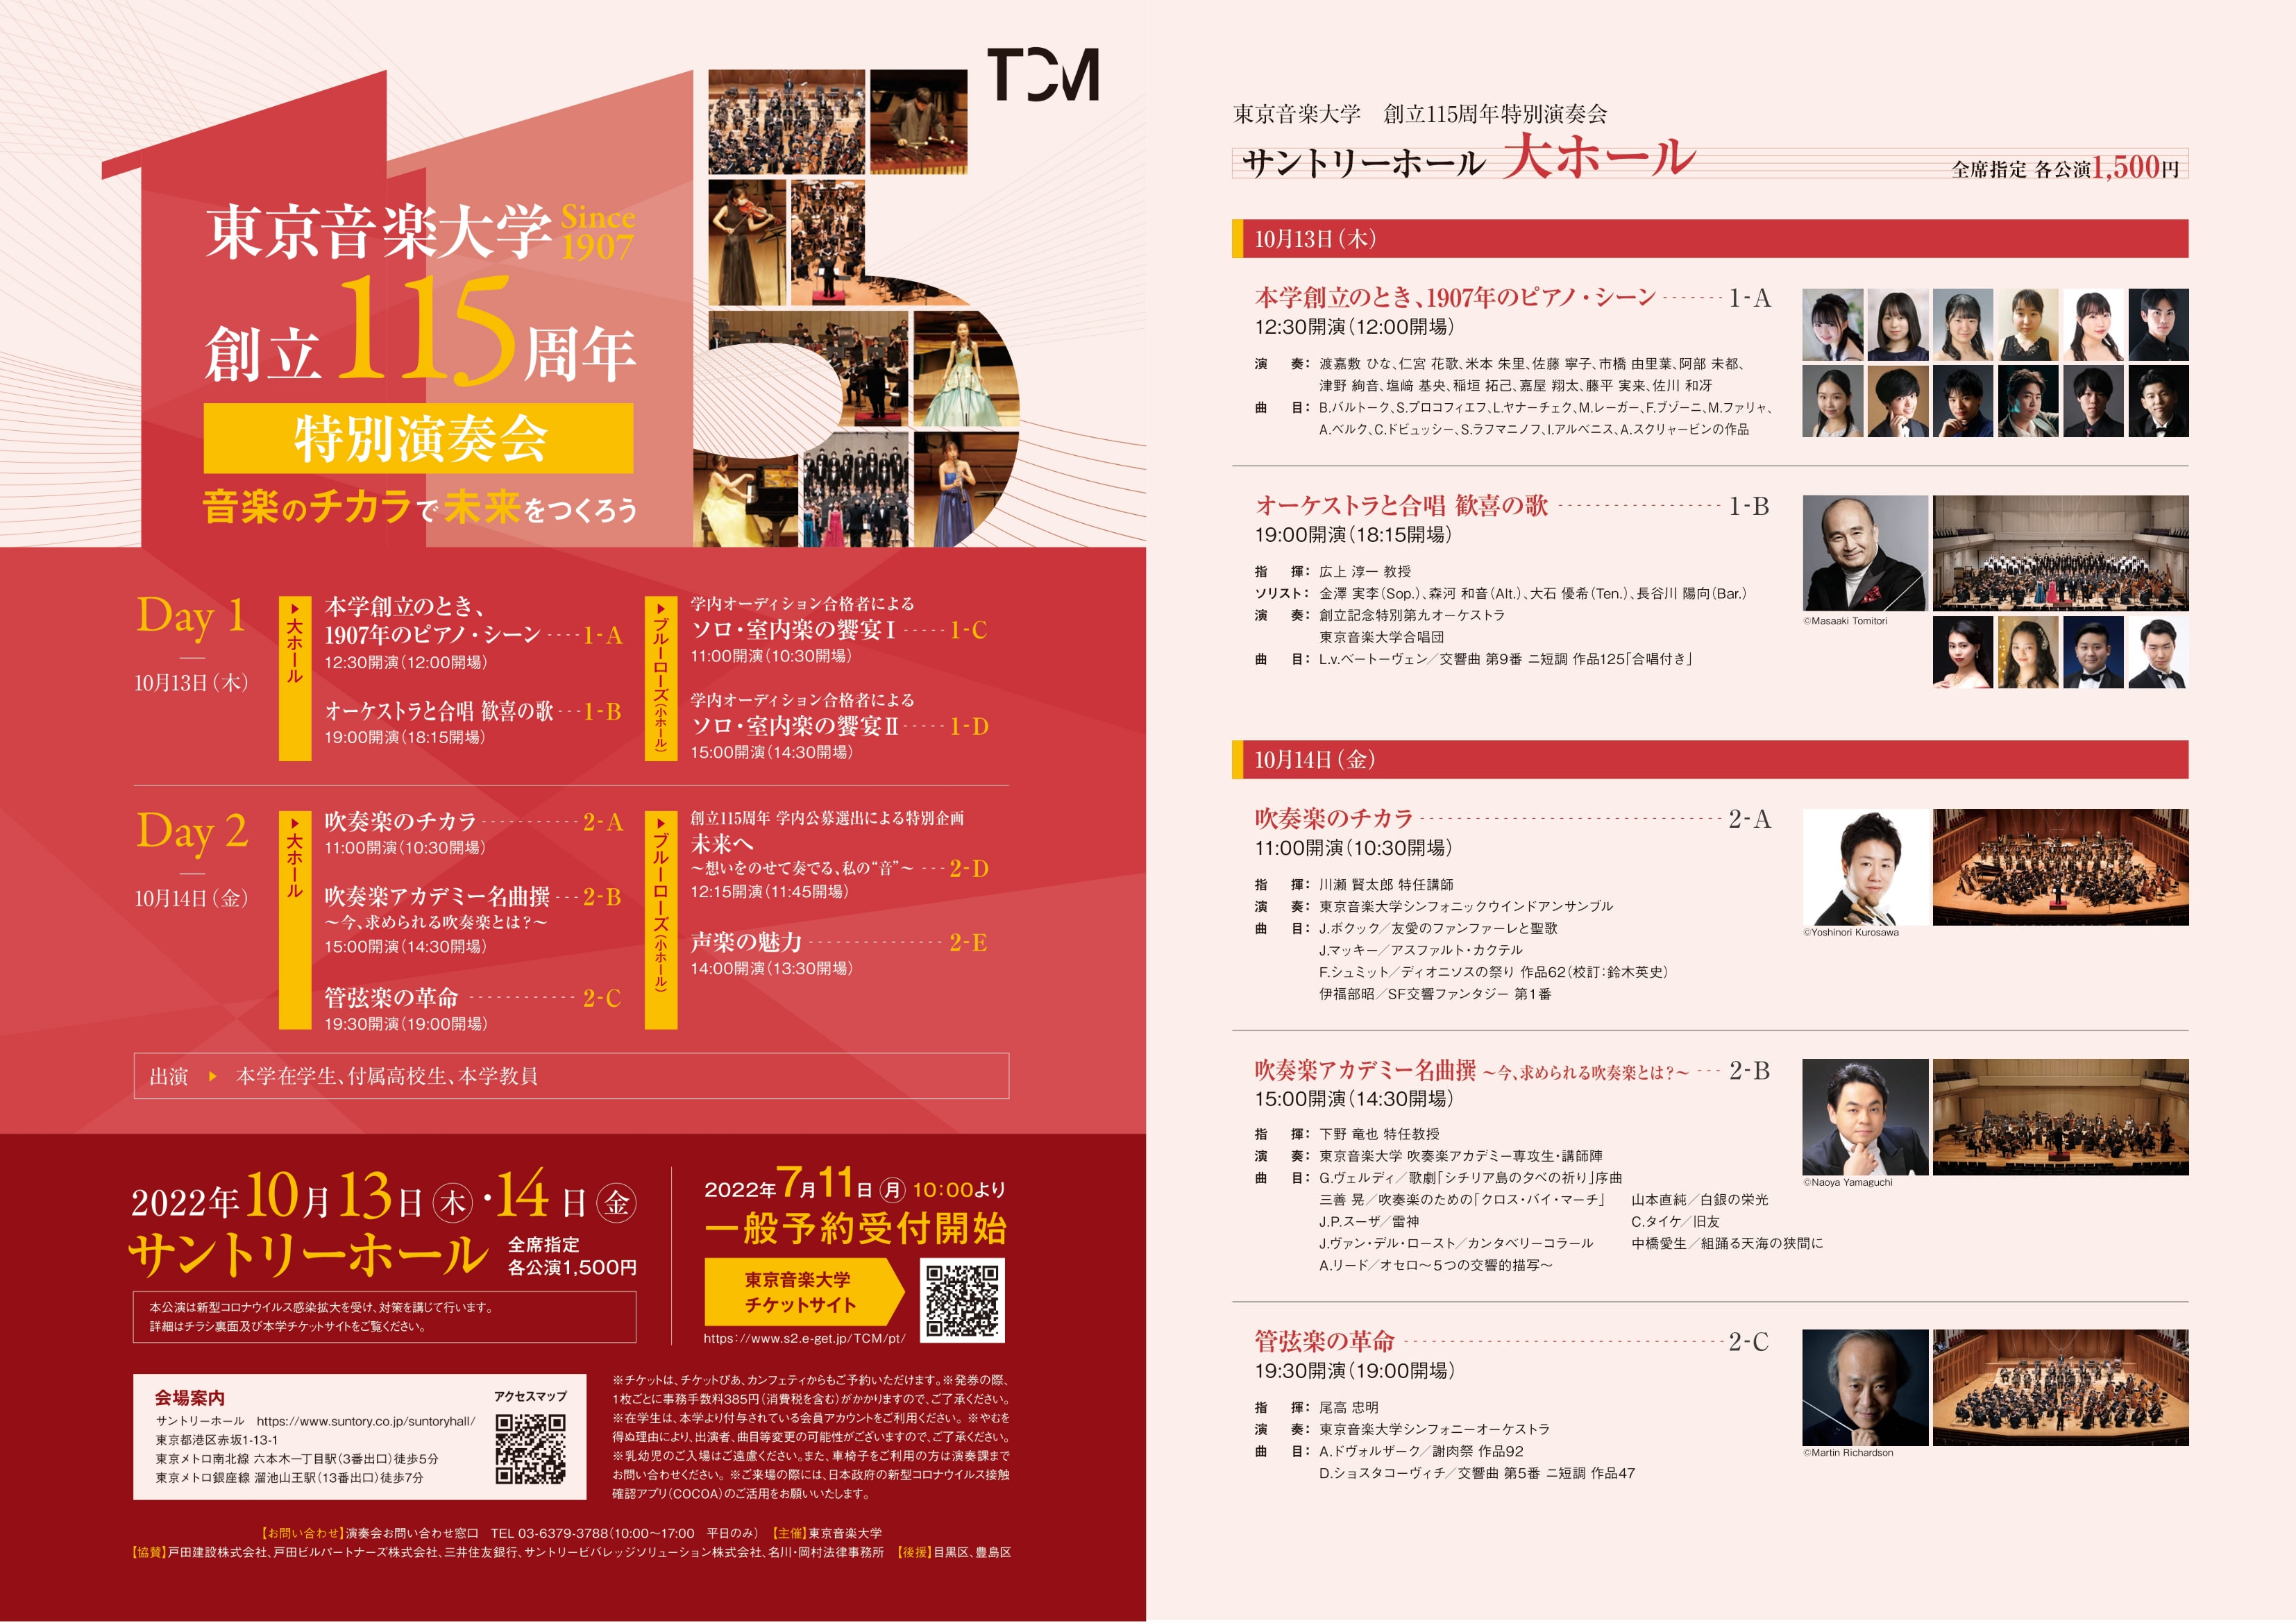 東京音楽大学 創立115周年特別演奏会 吹奏楽のチカラ